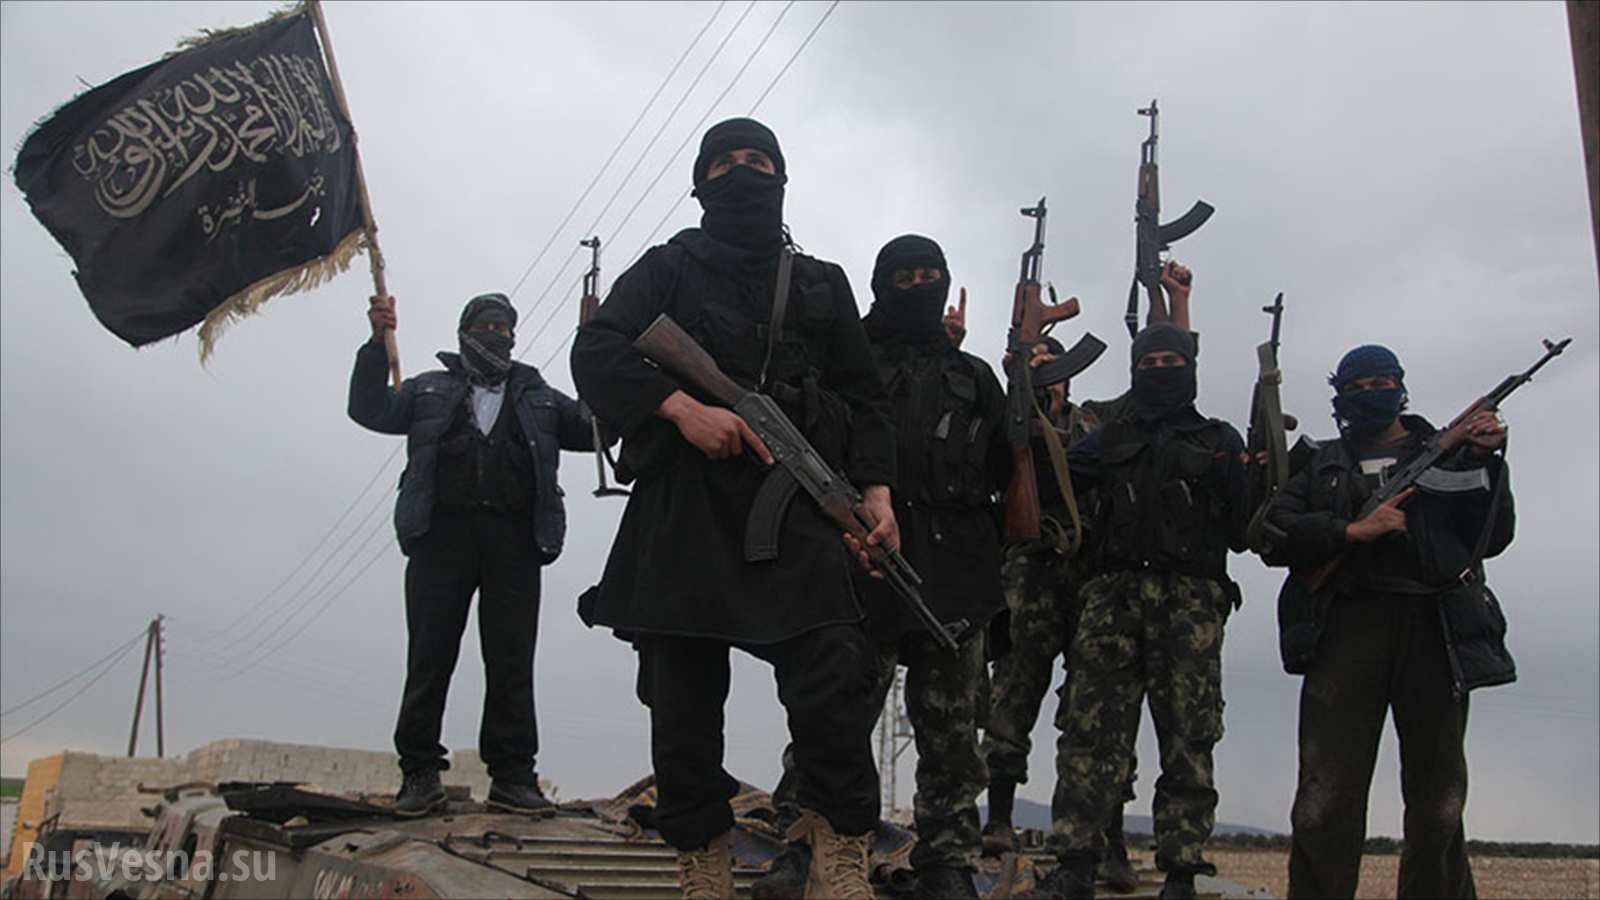 Идлиб: Как сирийская «Аль-Каида» зомбирует боевиков и вербует смертников с помощью курсов шариата